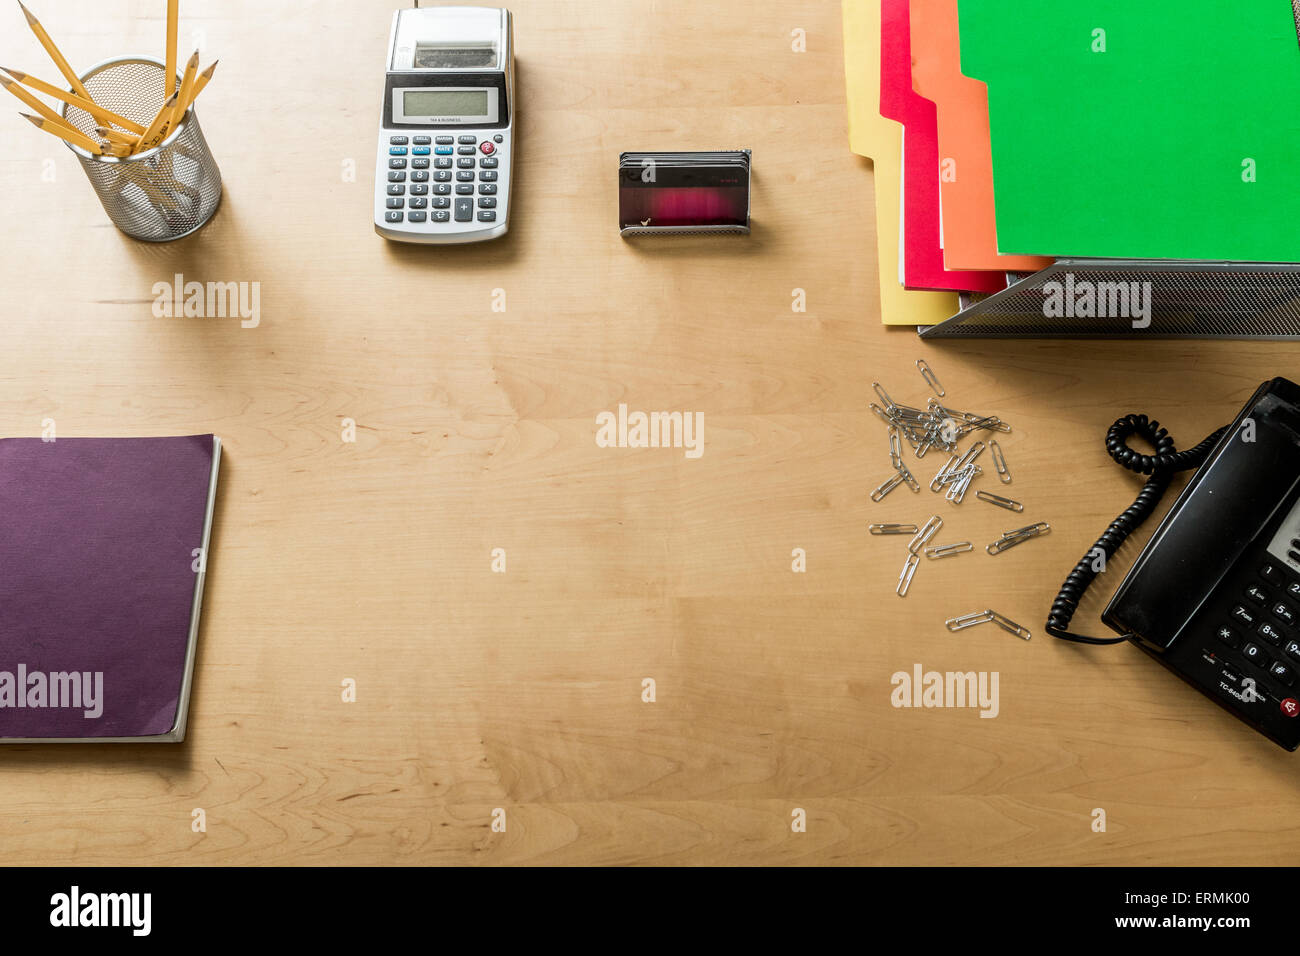 Un moderno espacio de trabajo de la oficina en casa con una calculadora, teléfono, lápices y otros objetos desde arriba Foto de stock